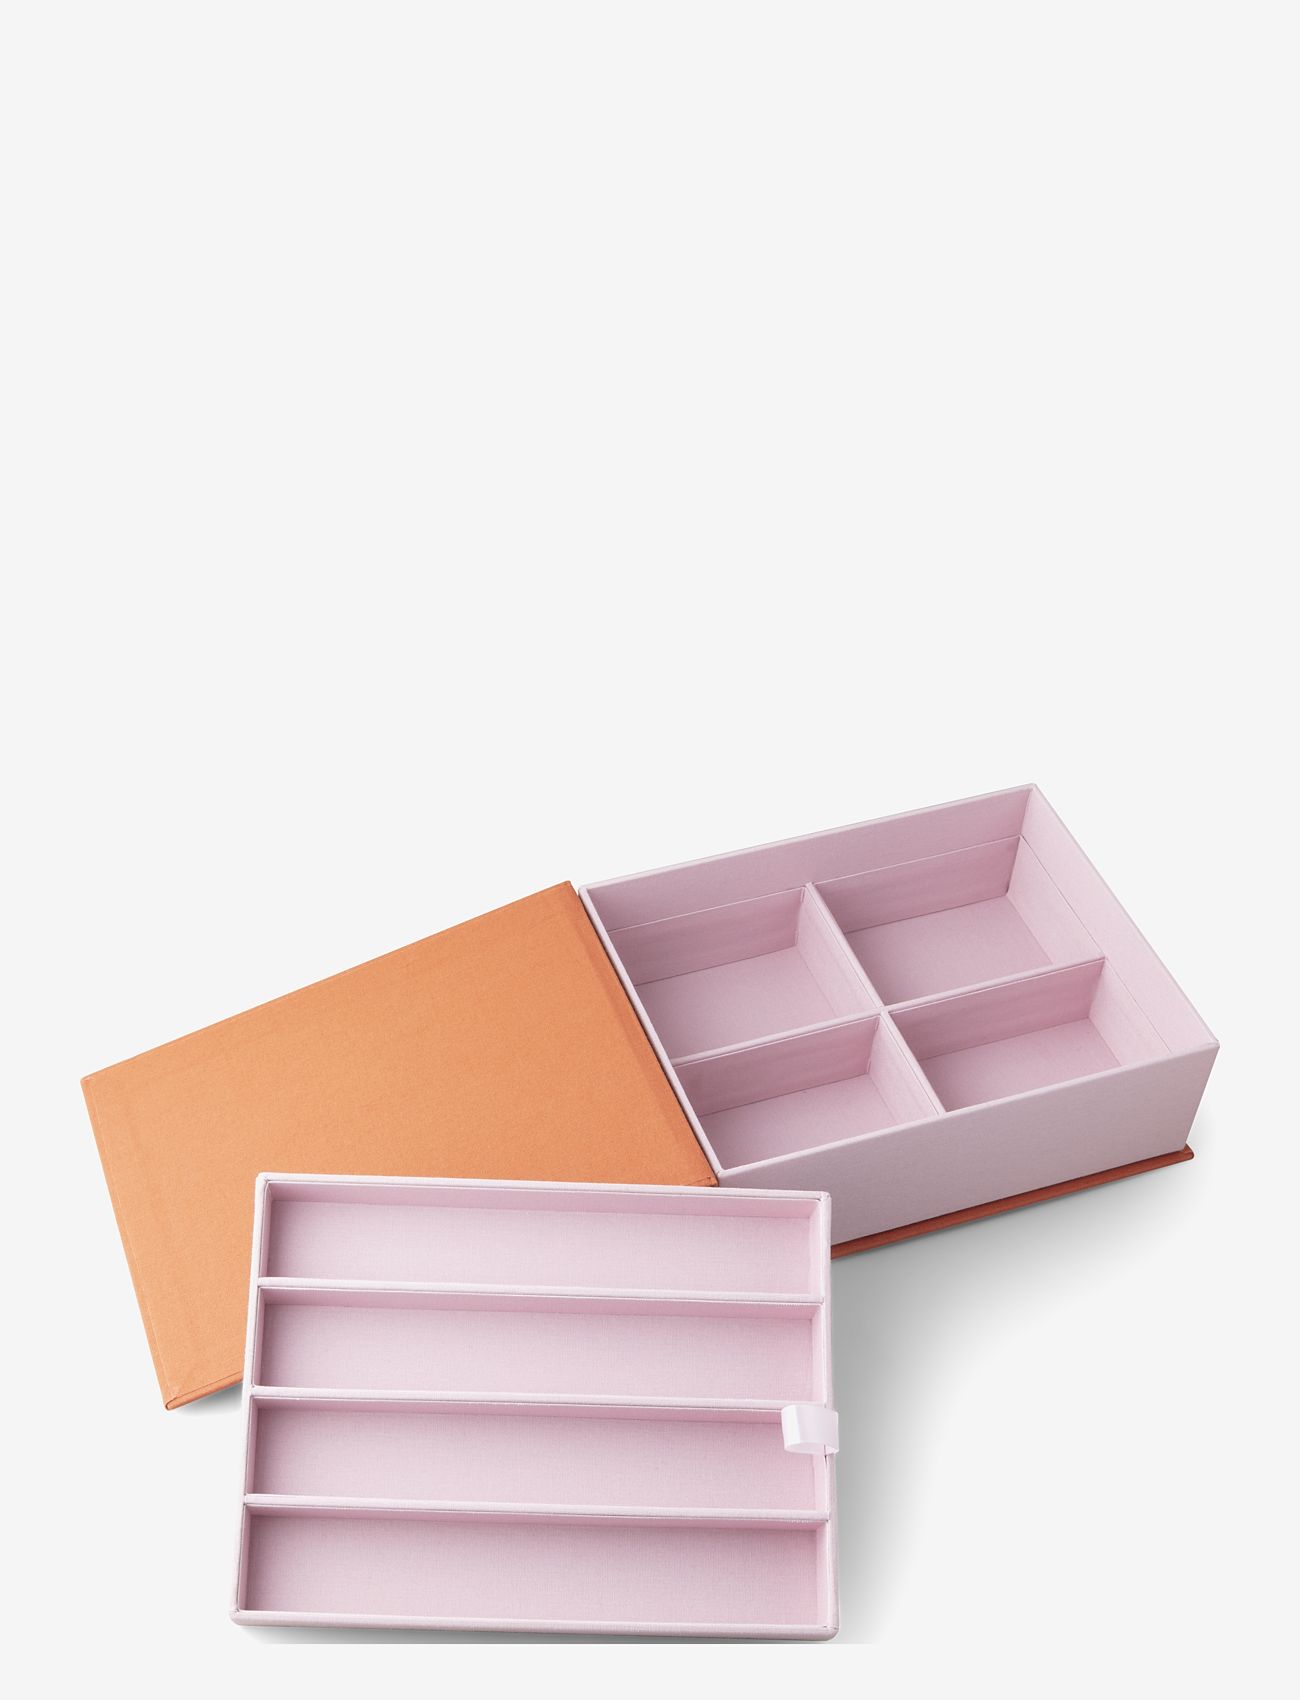 PRINTWORKS - Small things box - Grey - mažiausios kainos - orange/pink - 0